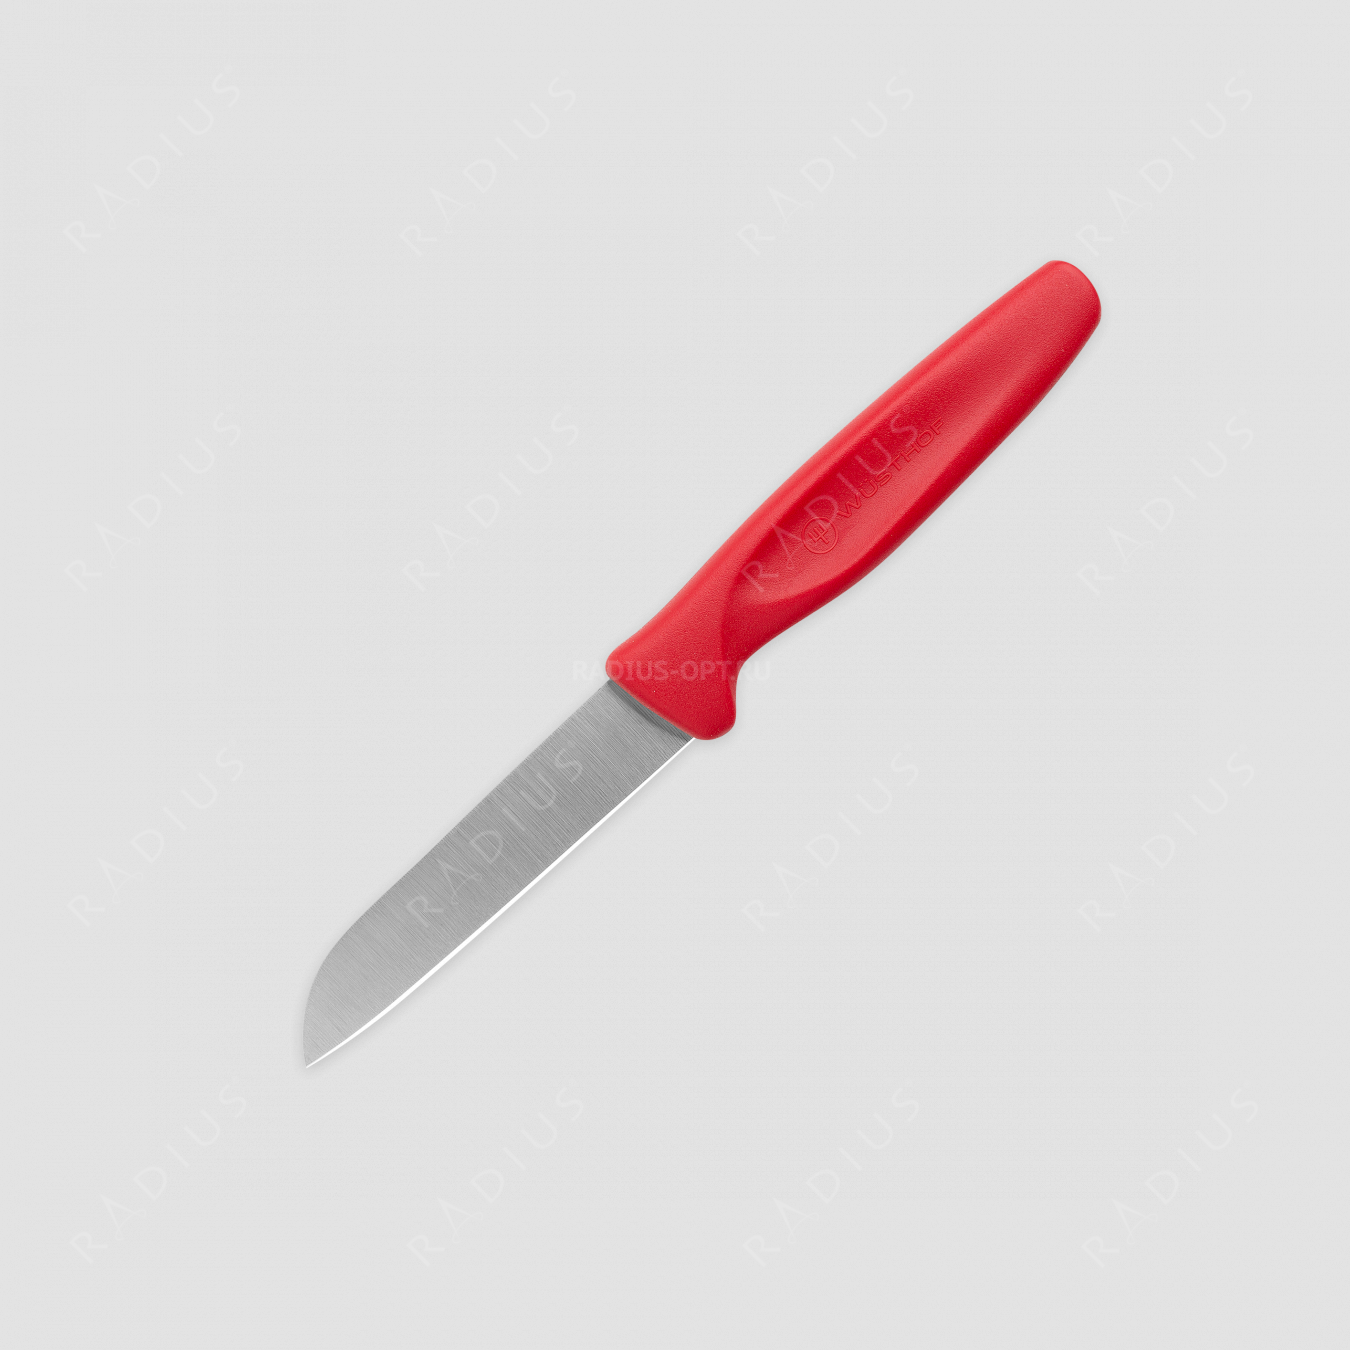 Нож кухонный для чистки овощей 8 см, рукоятка красная, серия Create Collection, WUESTHOF, Золинген, Германия